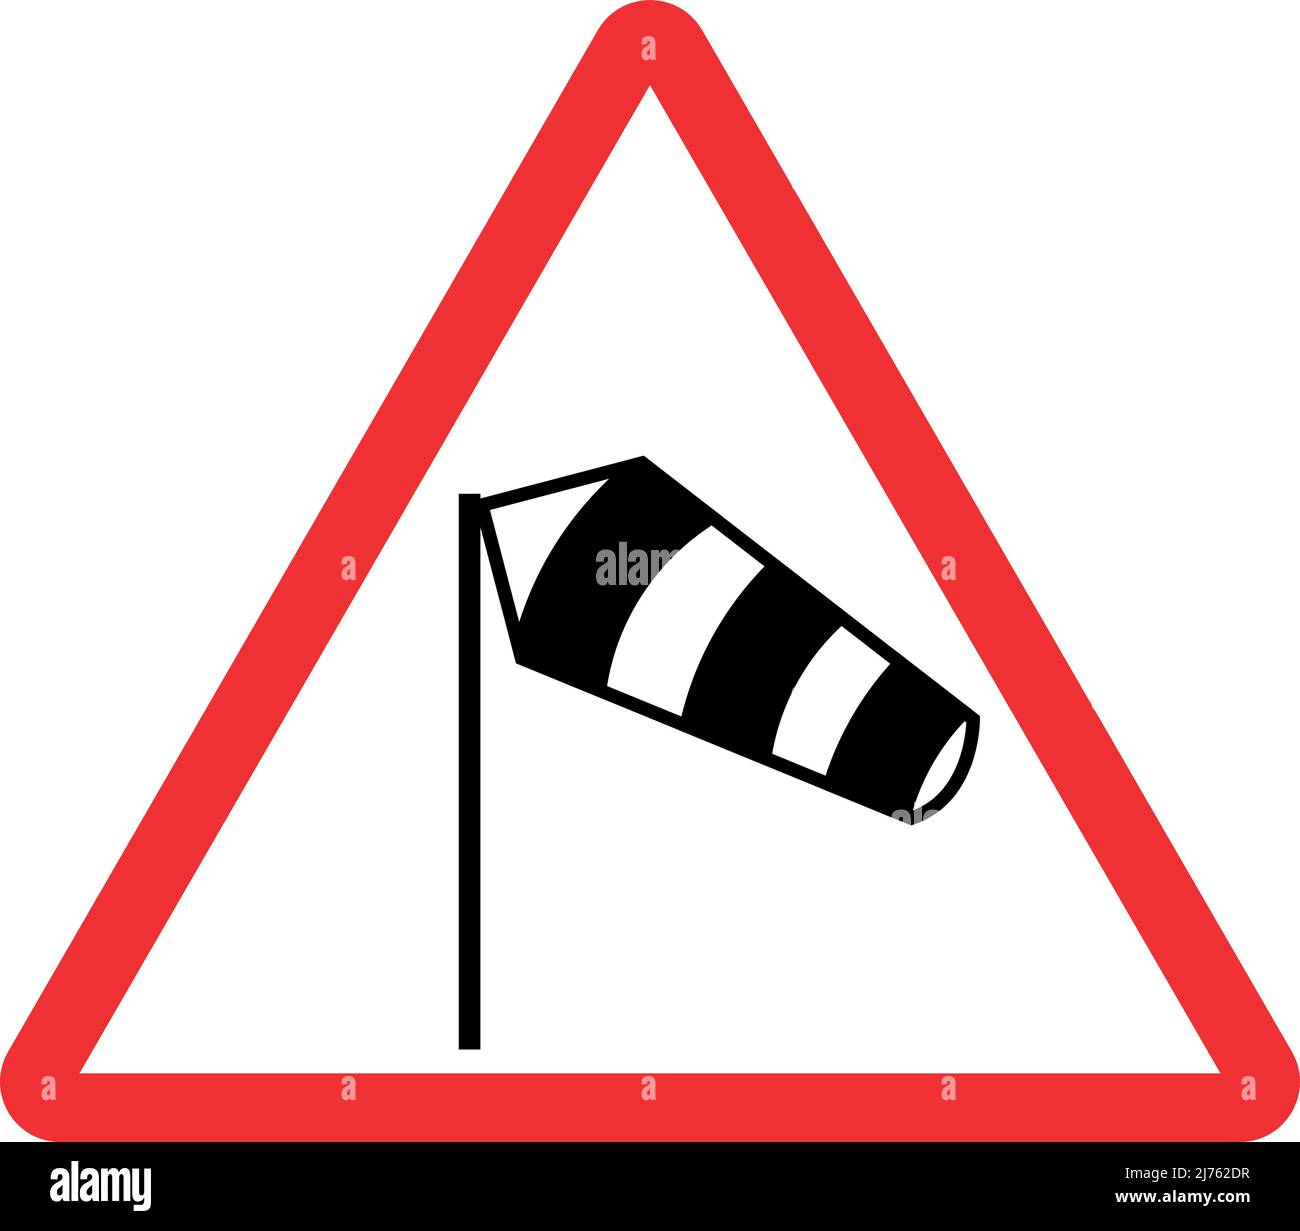 Warnschild Seitenwind von links. Roter Dreieckhintergrund. Verkehrszeichen und Symbole. Stock Vektor